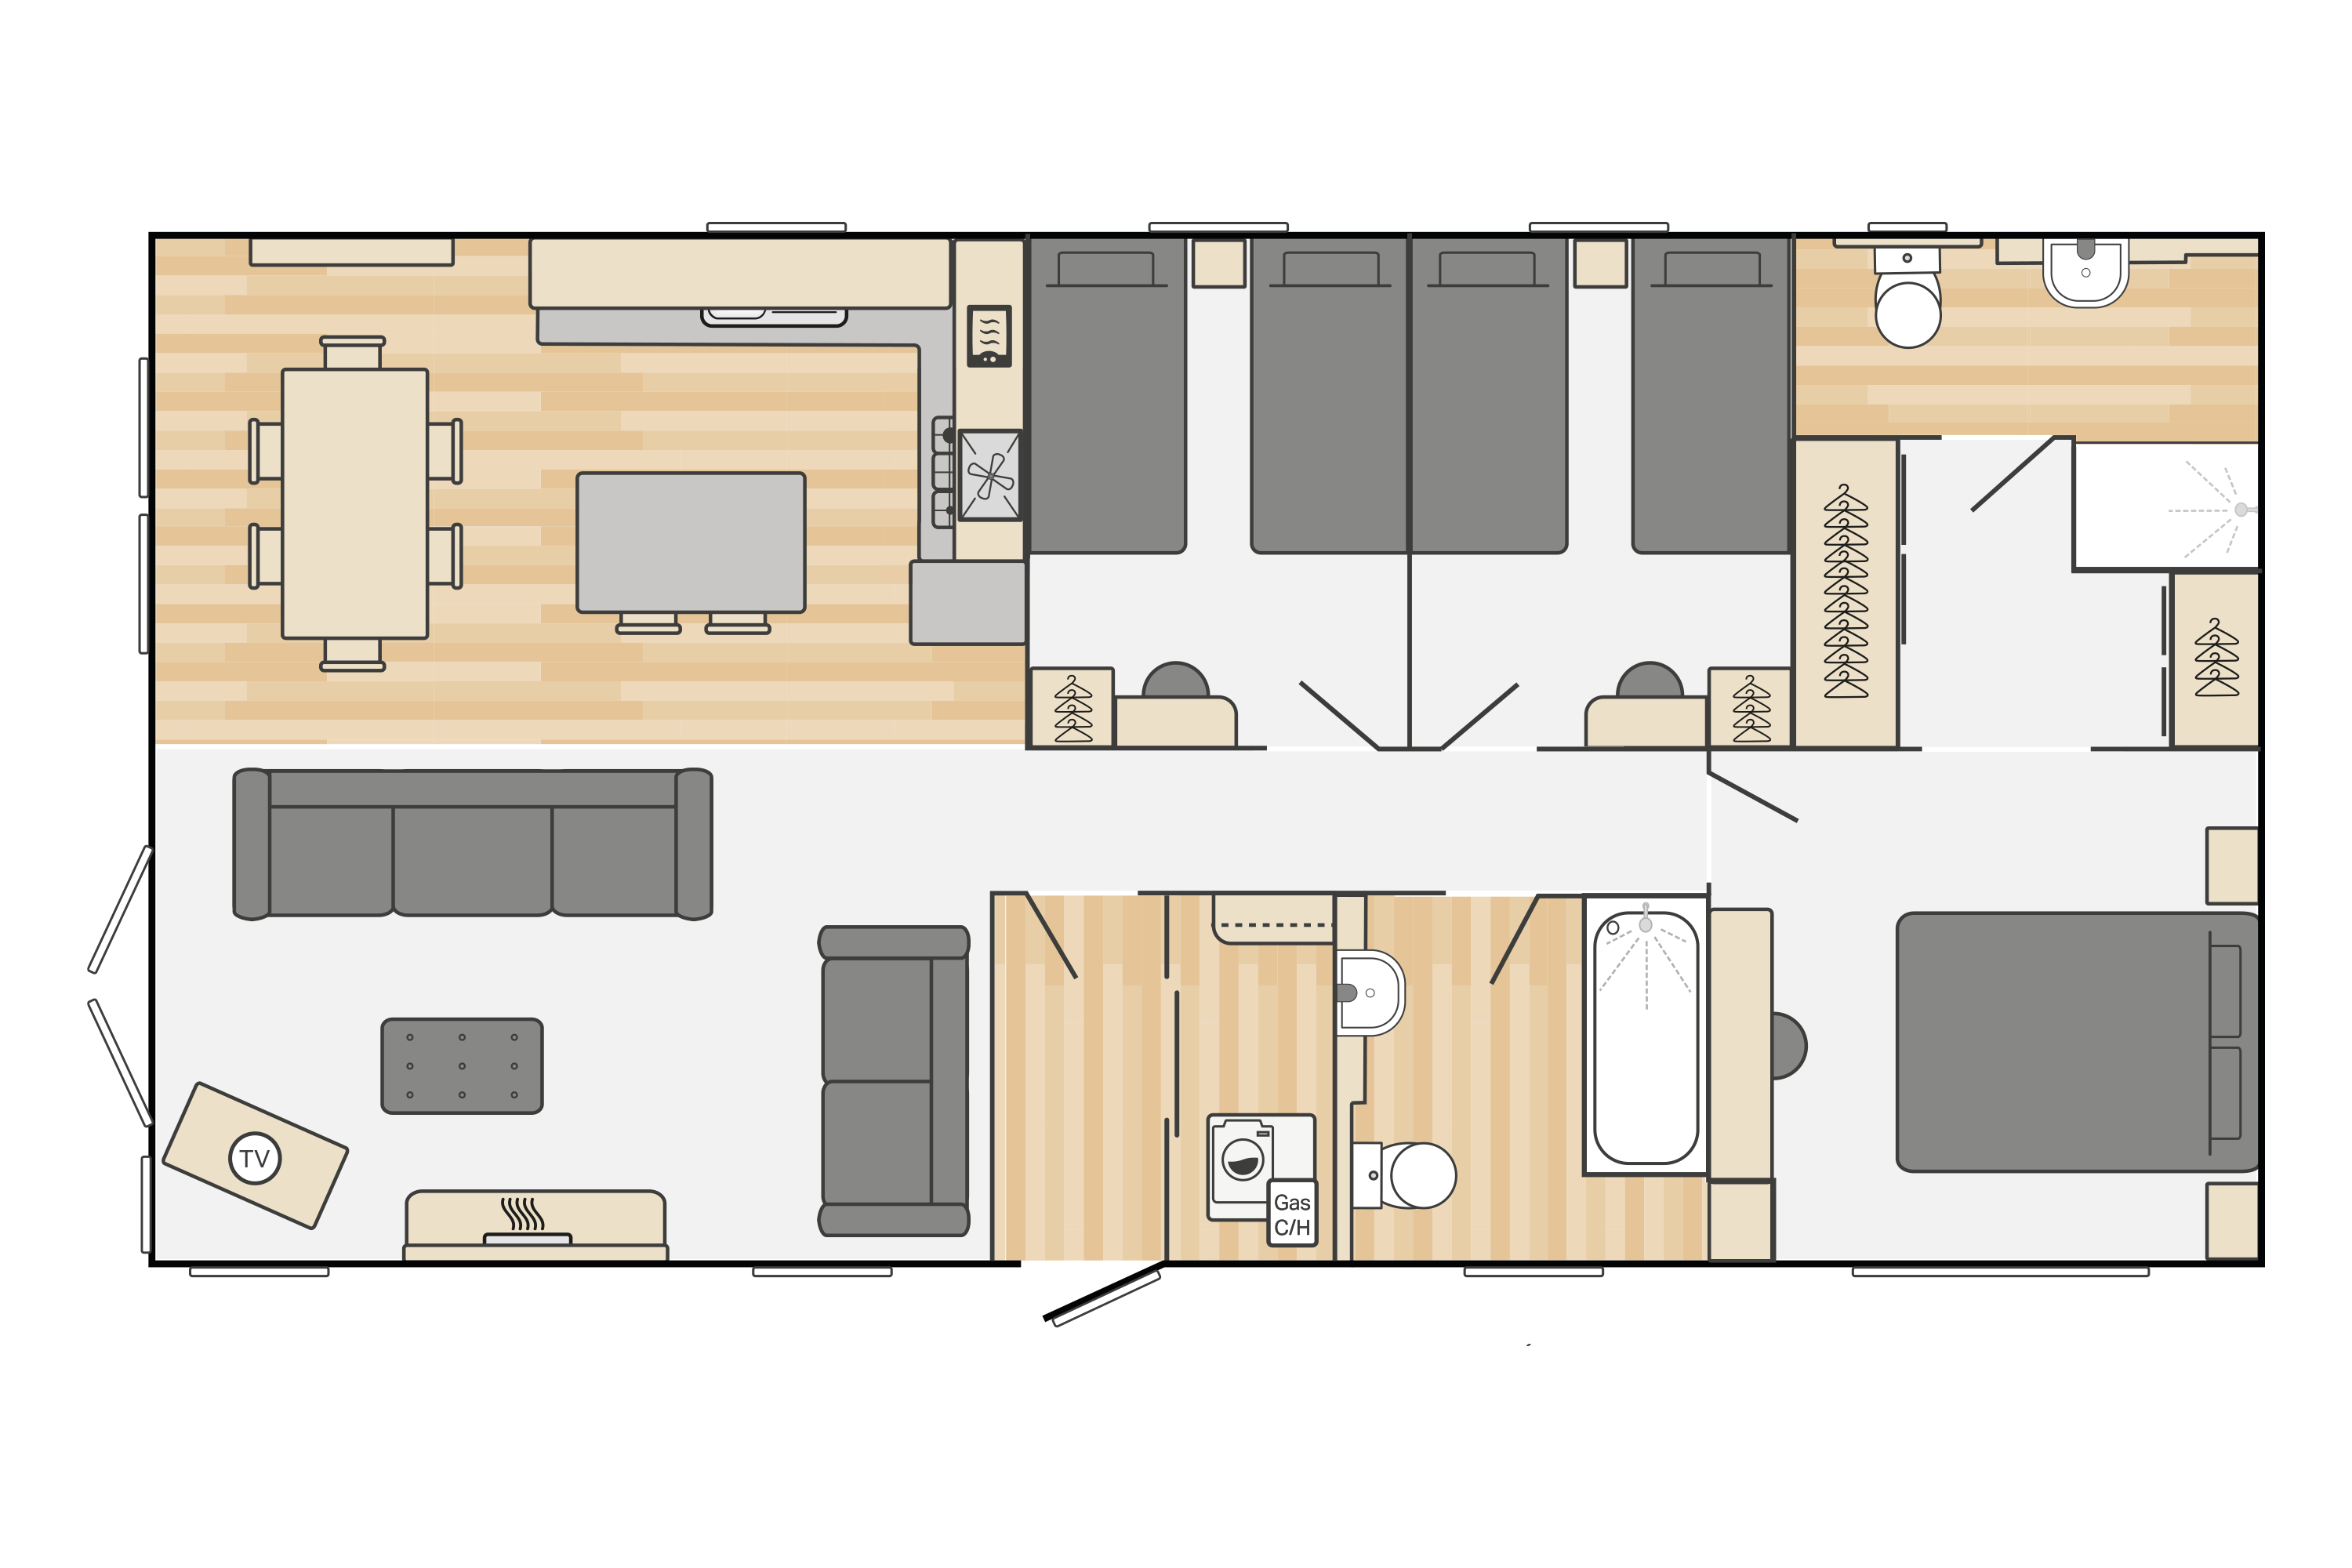 Edmonton Lodge (Coastal) 40' x 20' 3 Bedroom floorplan